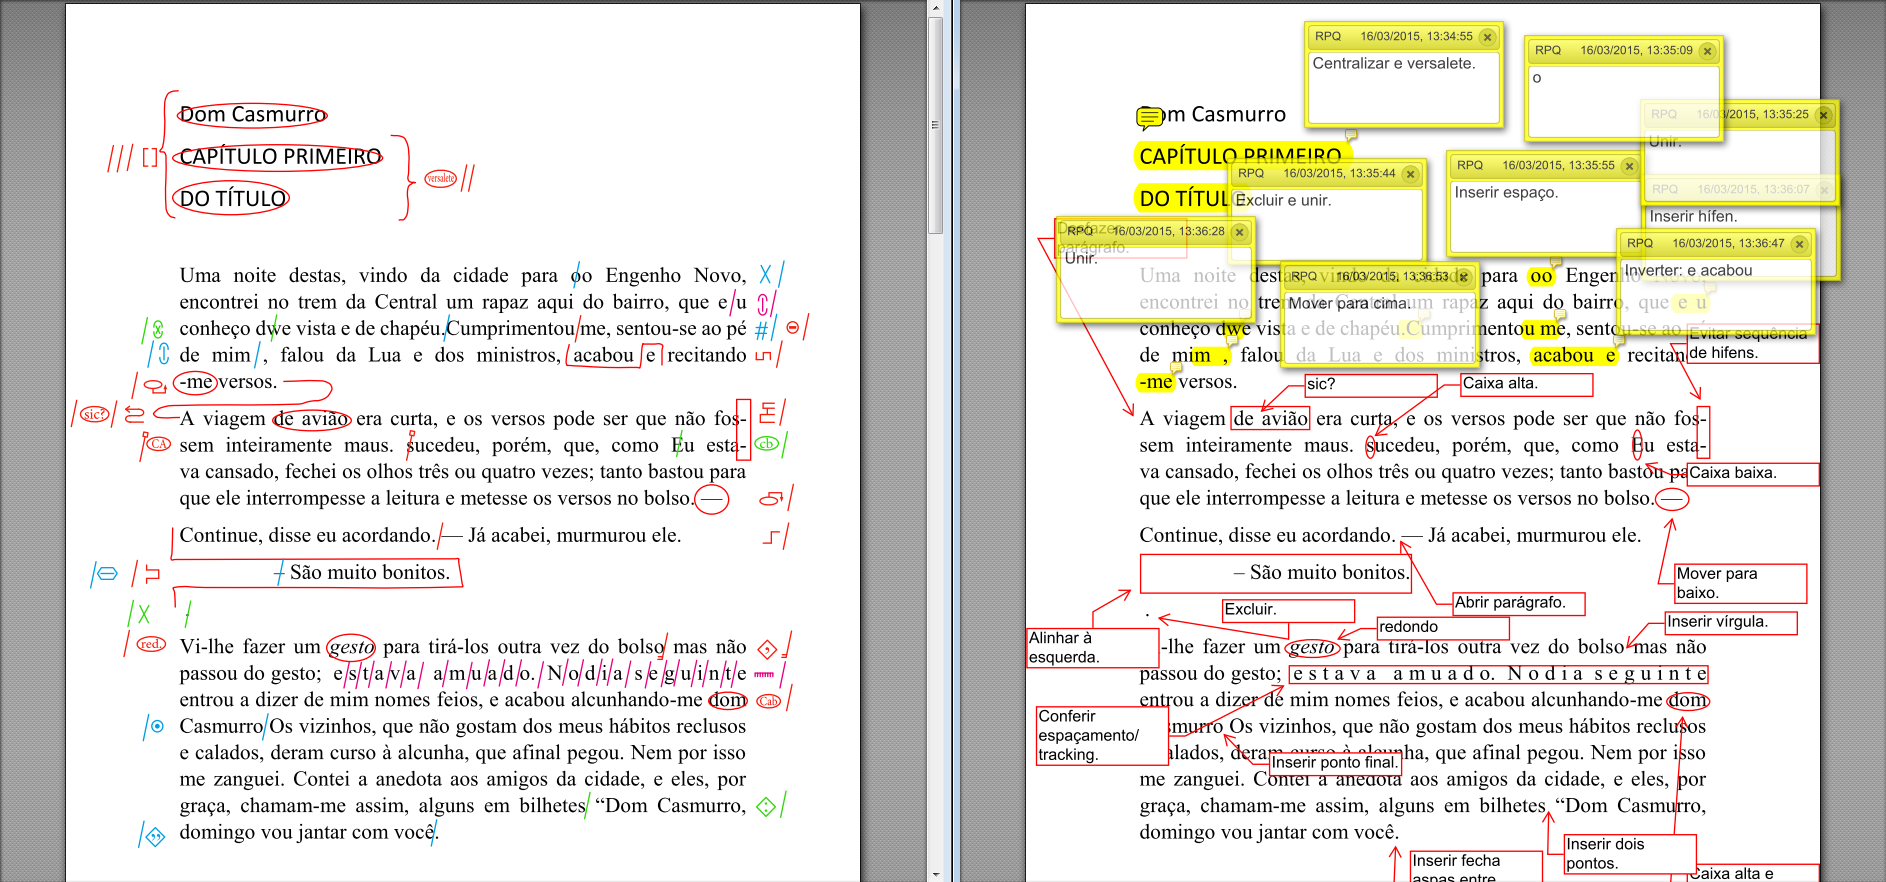 Diferença entre sinais de revisão e balões no PDF